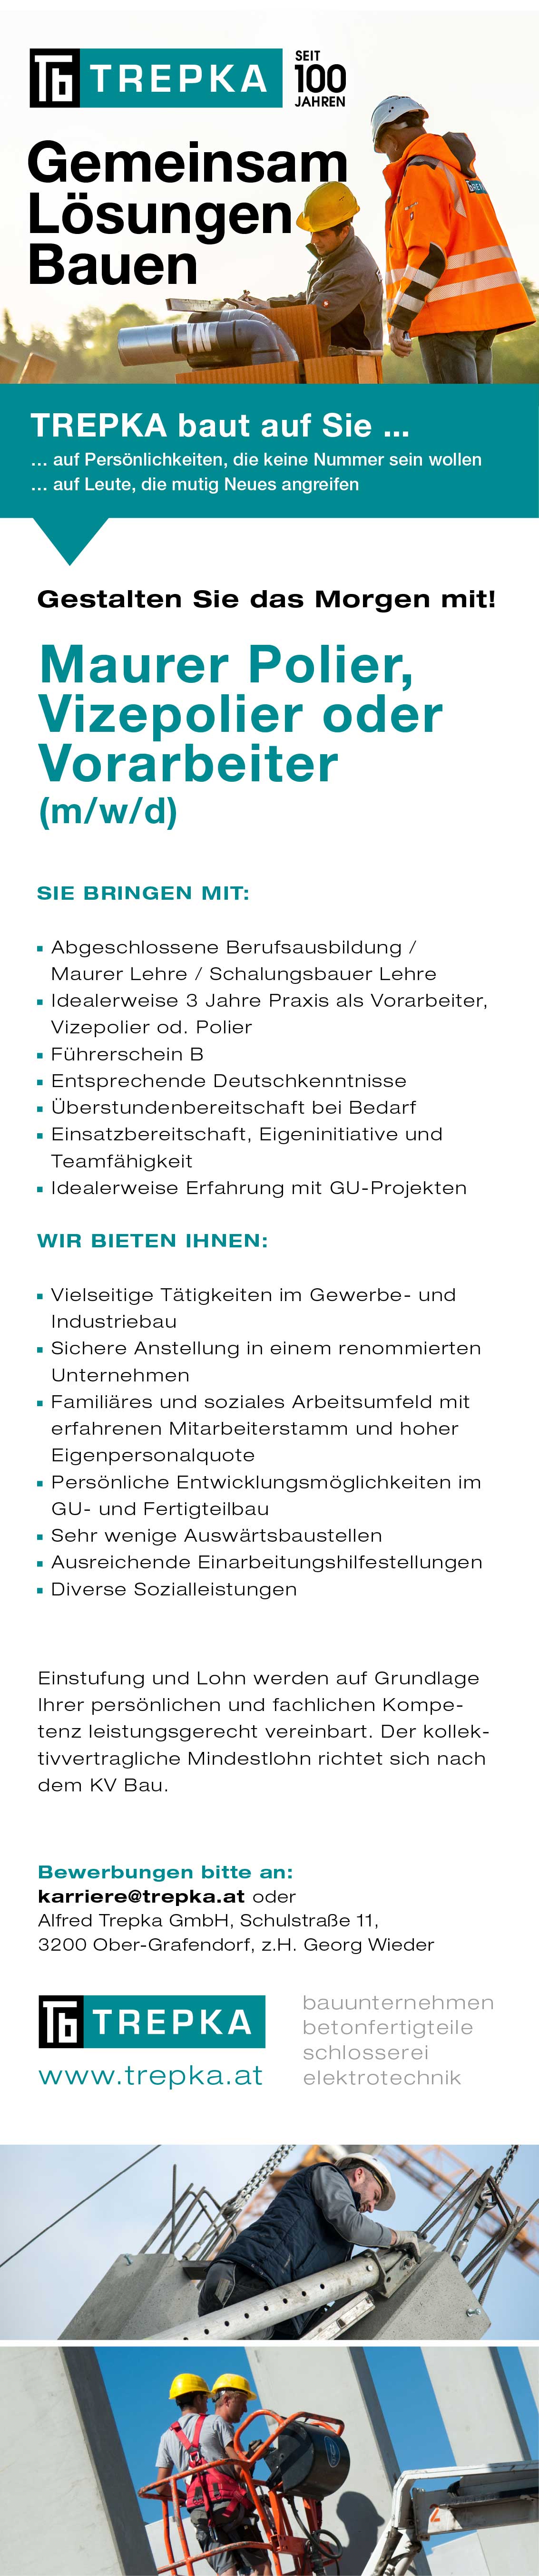 Job als Polier oder Vizepolier Vollzeit in Ober-Grafendorf bei Trepka.